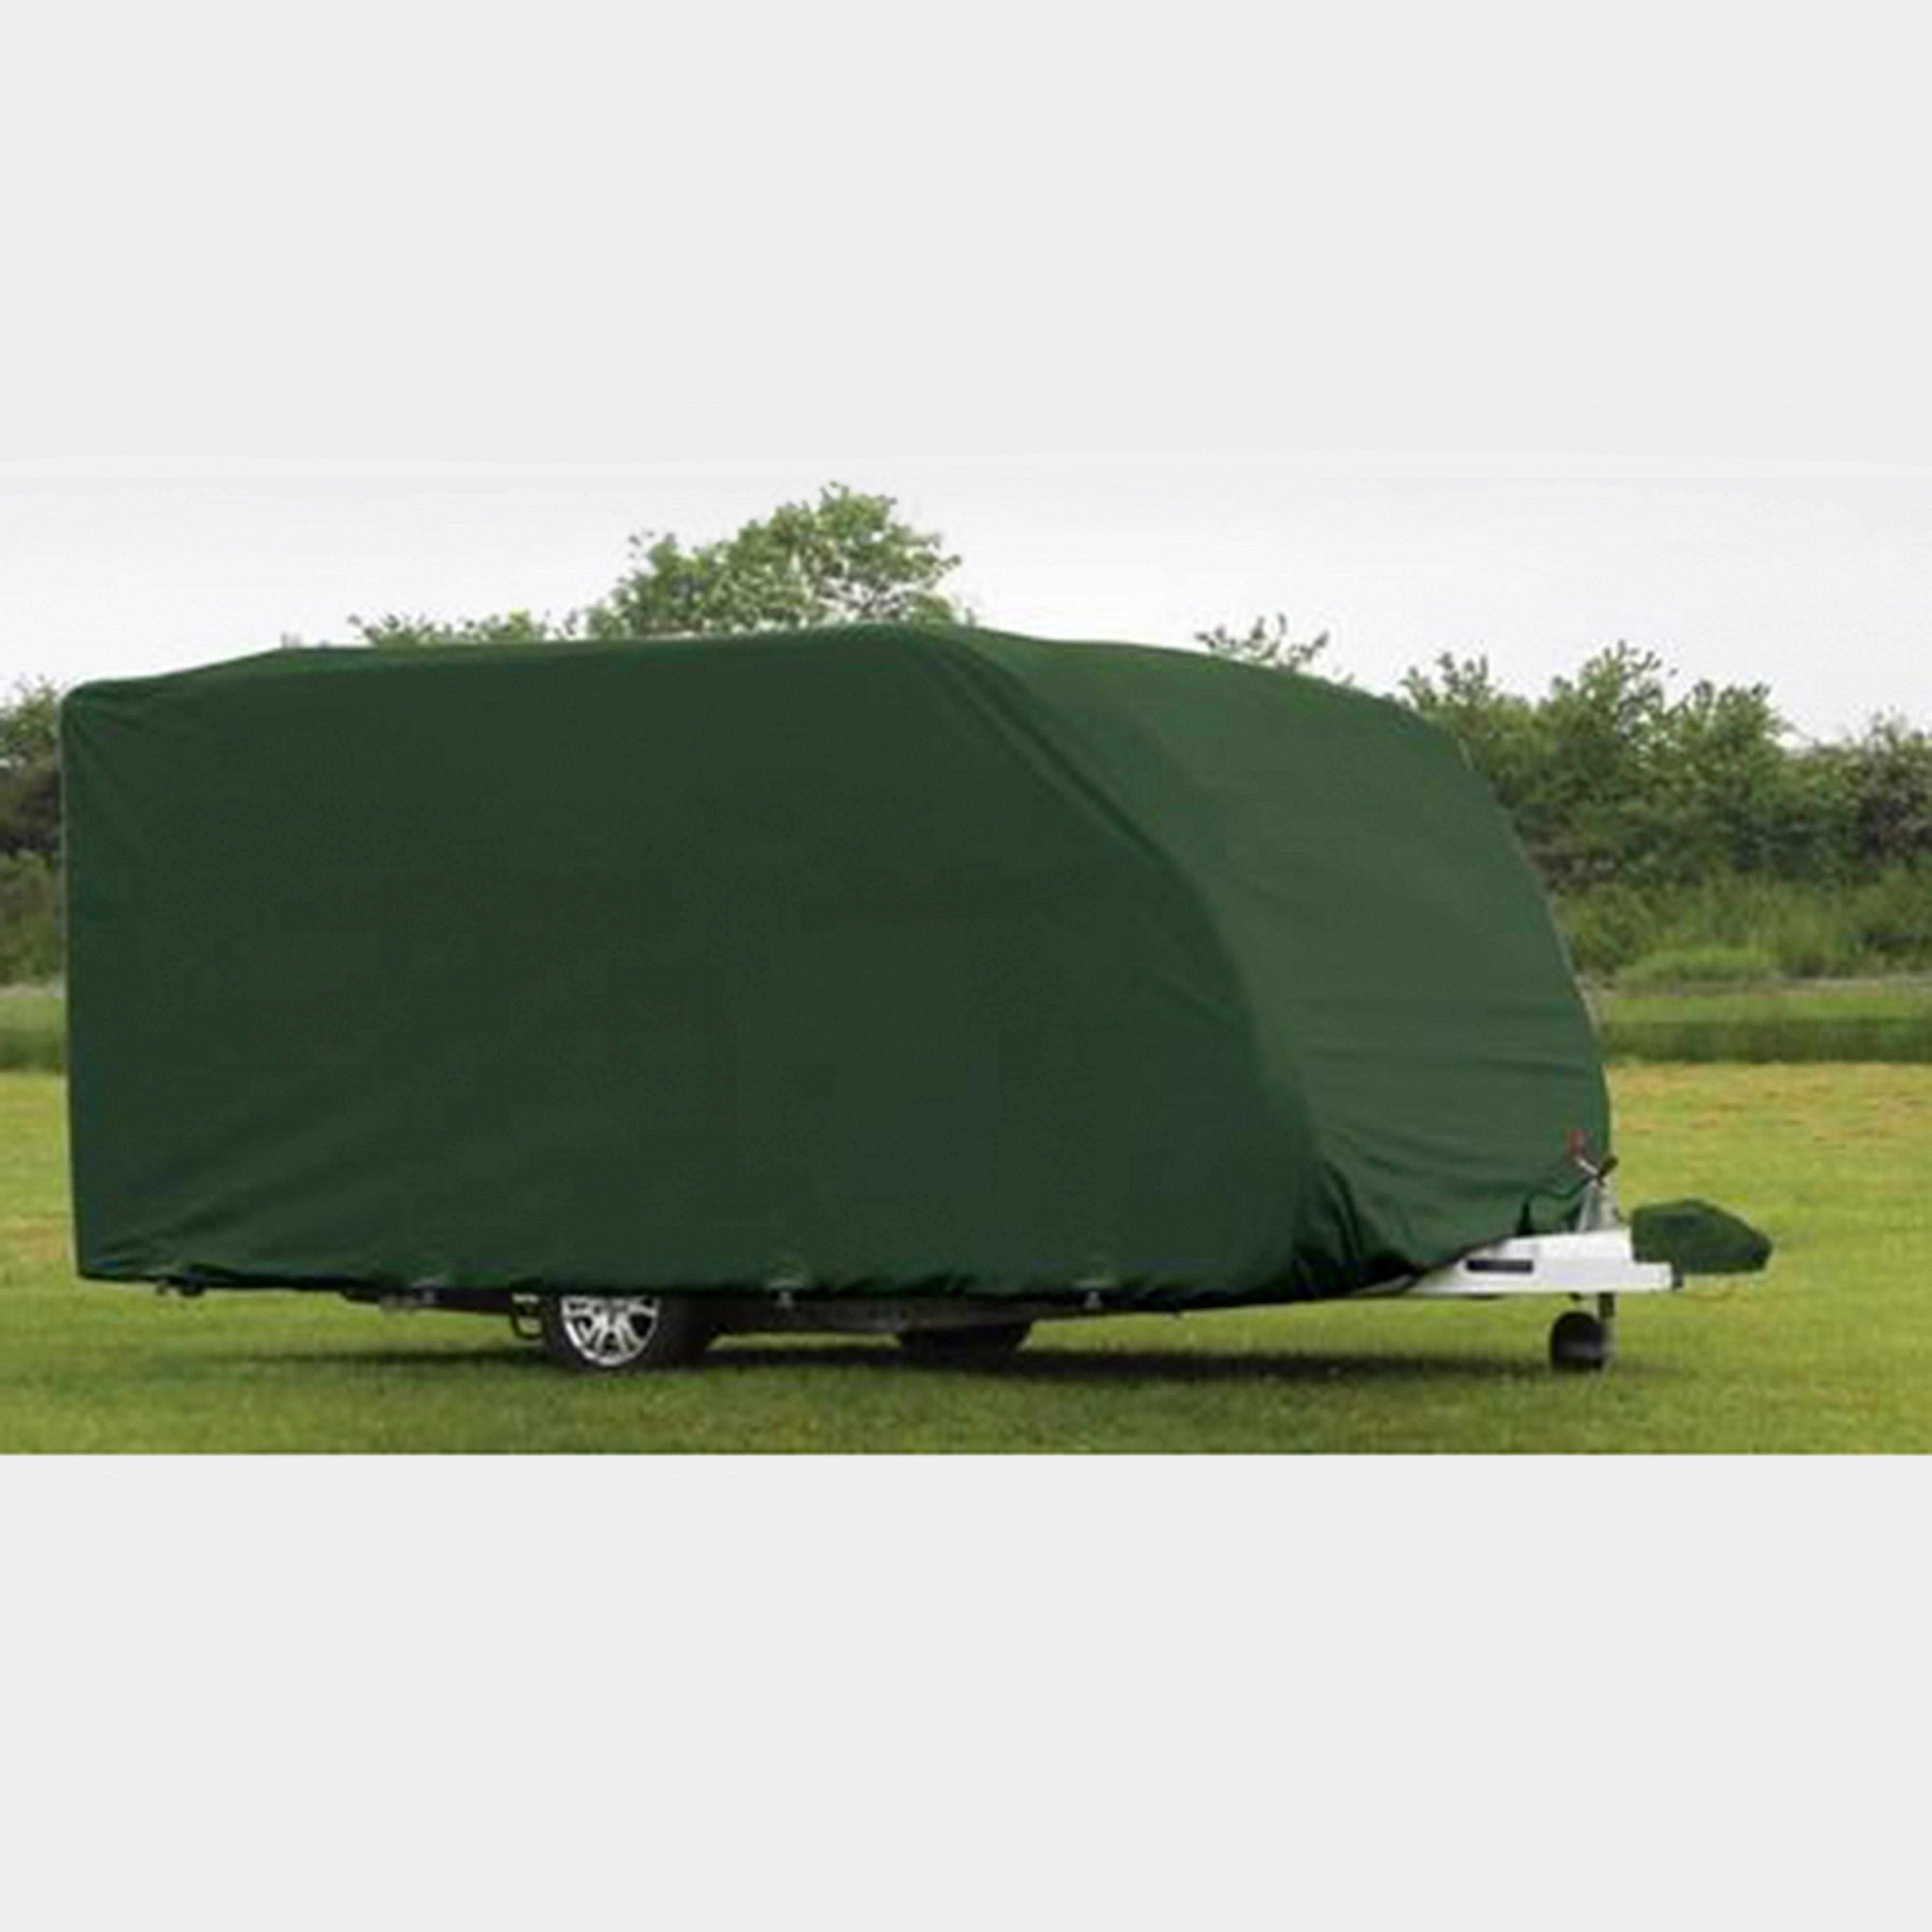  Quest Caravan Cover Small (12-14ft), Green